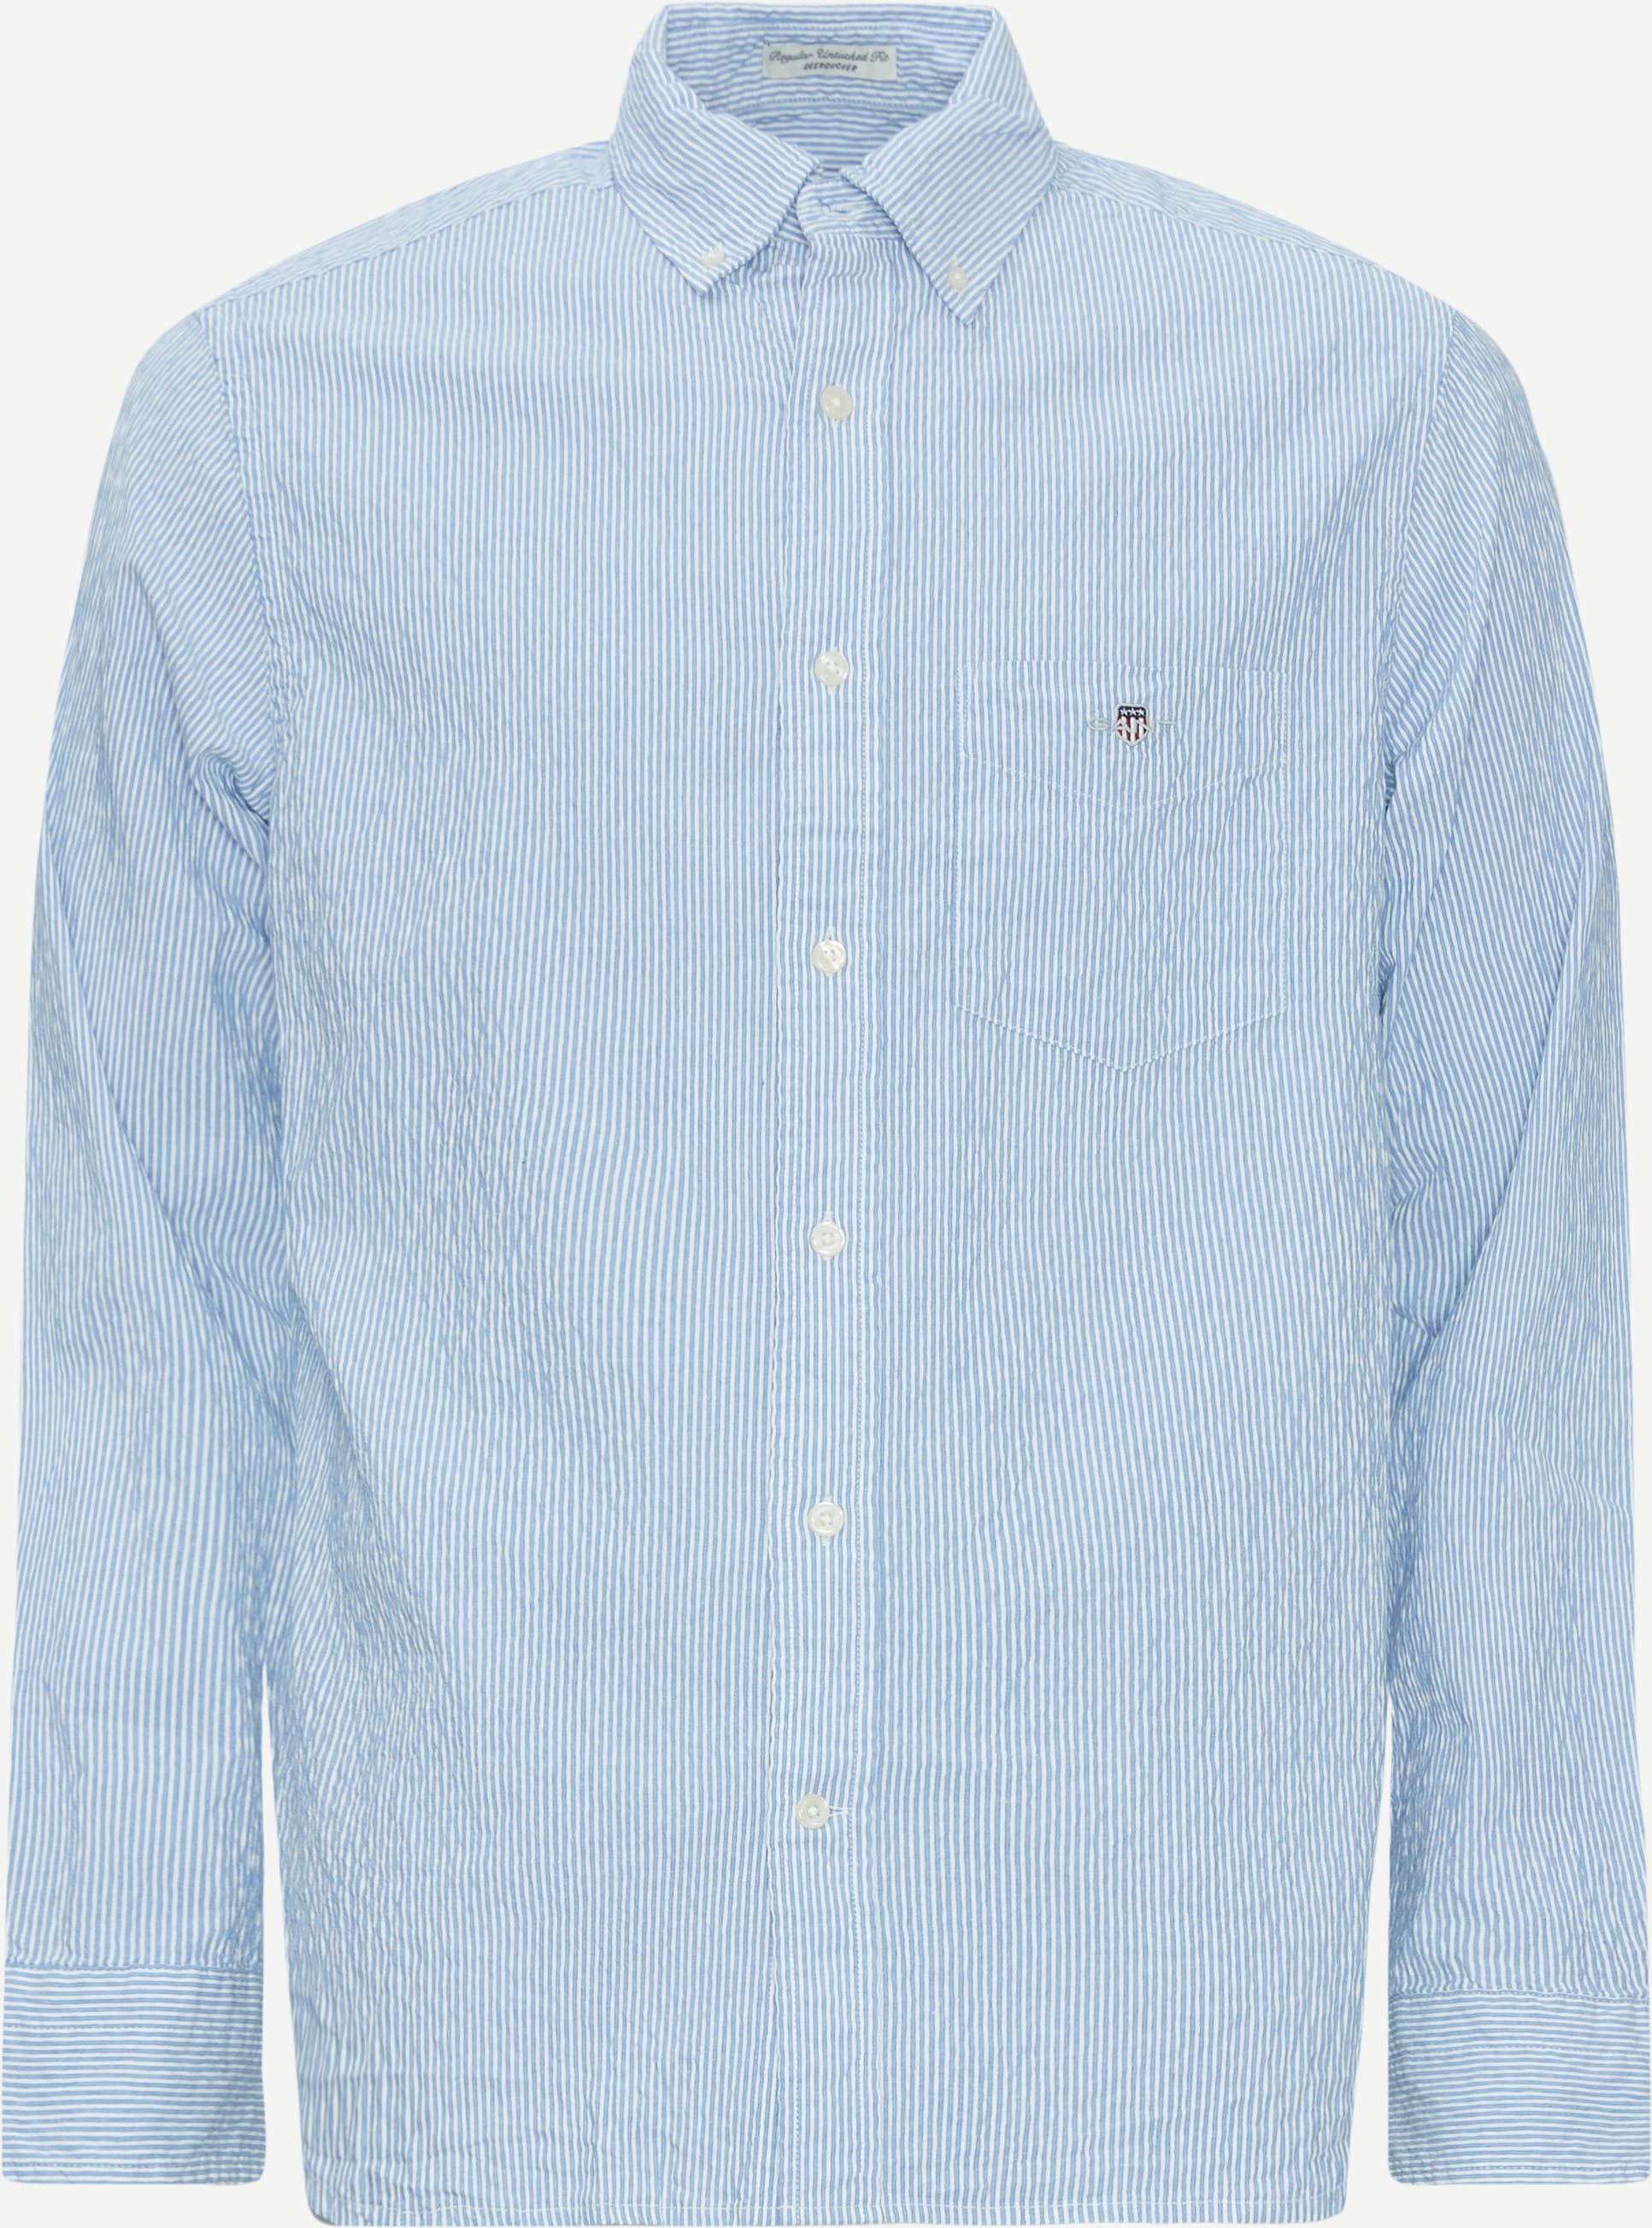 Gant Skjorter REG SEERSUCKER STRIPE SHIRT 3240063 Blå